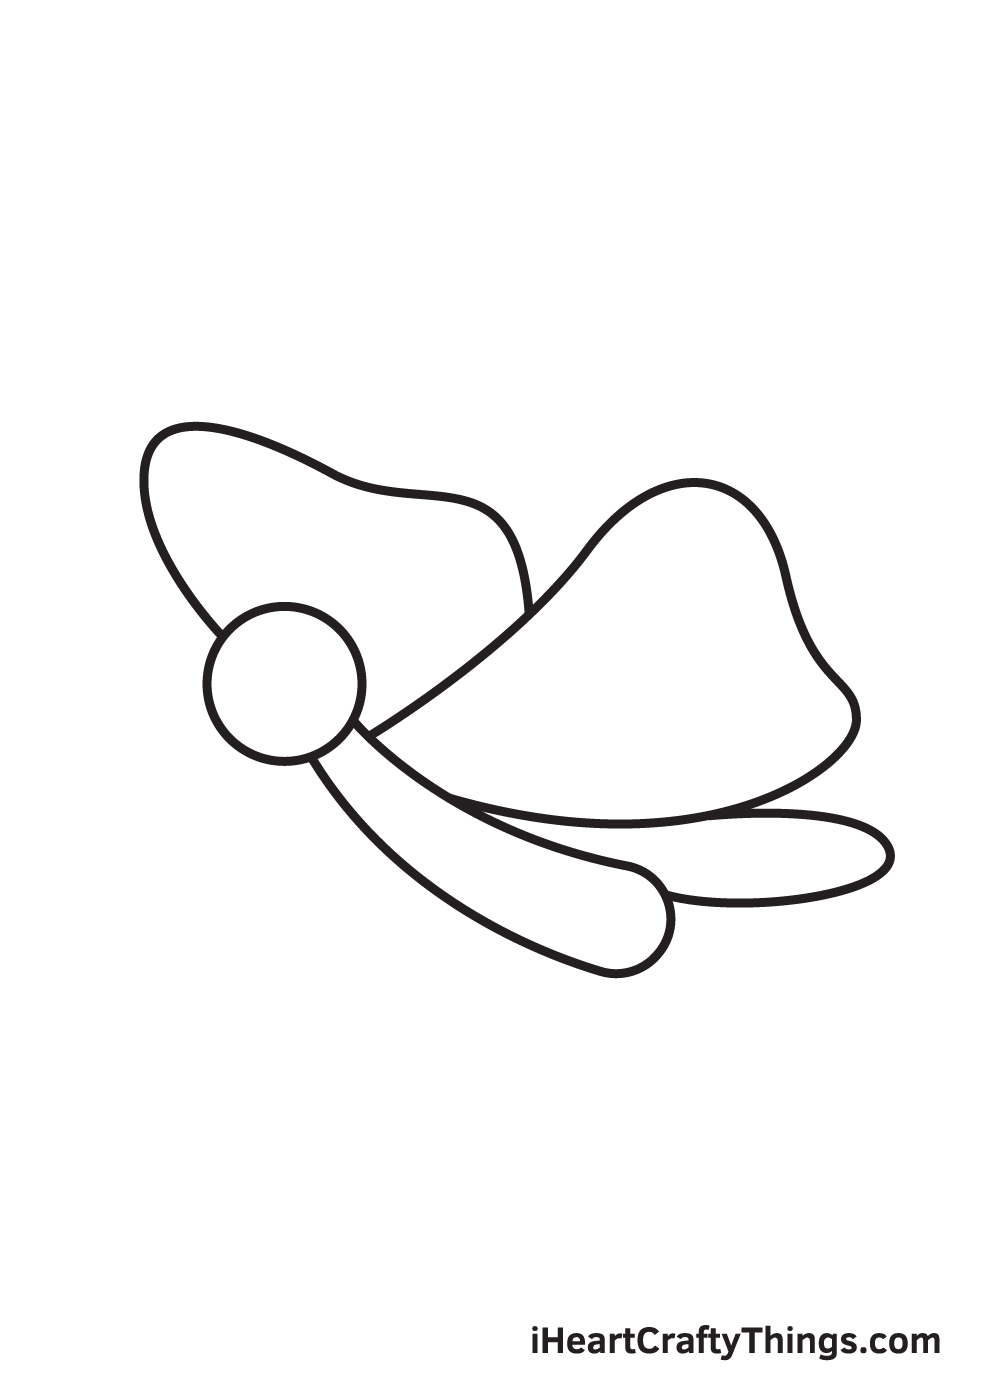 Butterfly DRAWING – STEP 5 - Hướng dẫn chi tiết cách vẽ con bướm đơn giản với 9 bước cơ bản